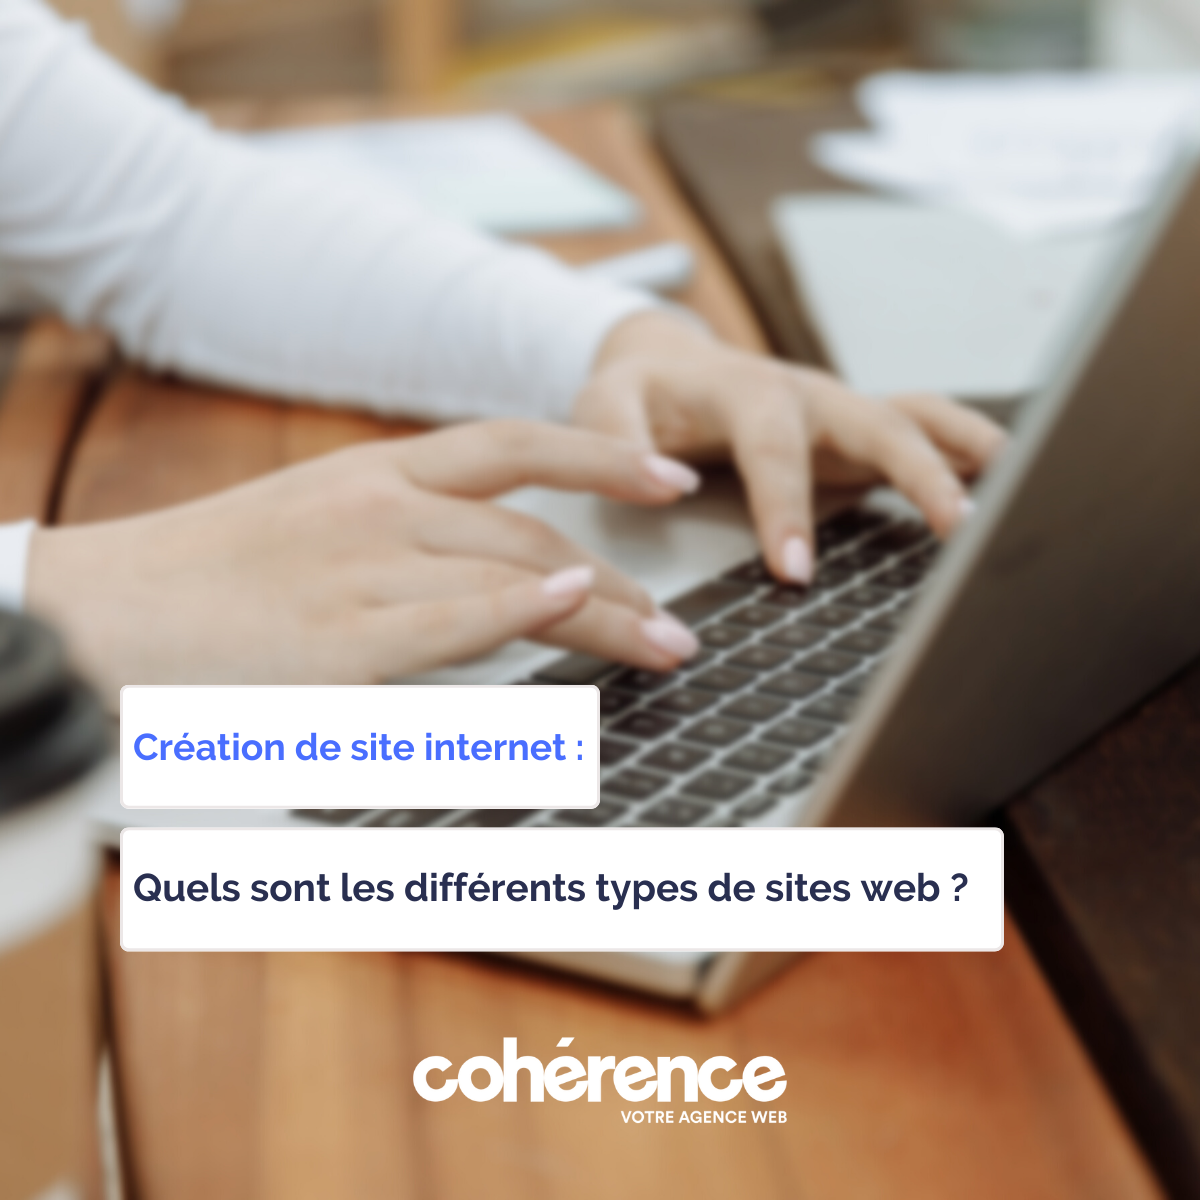 Coherence Agence Web A Rennes Quels Sont Les Differents Types De Sites Web 2